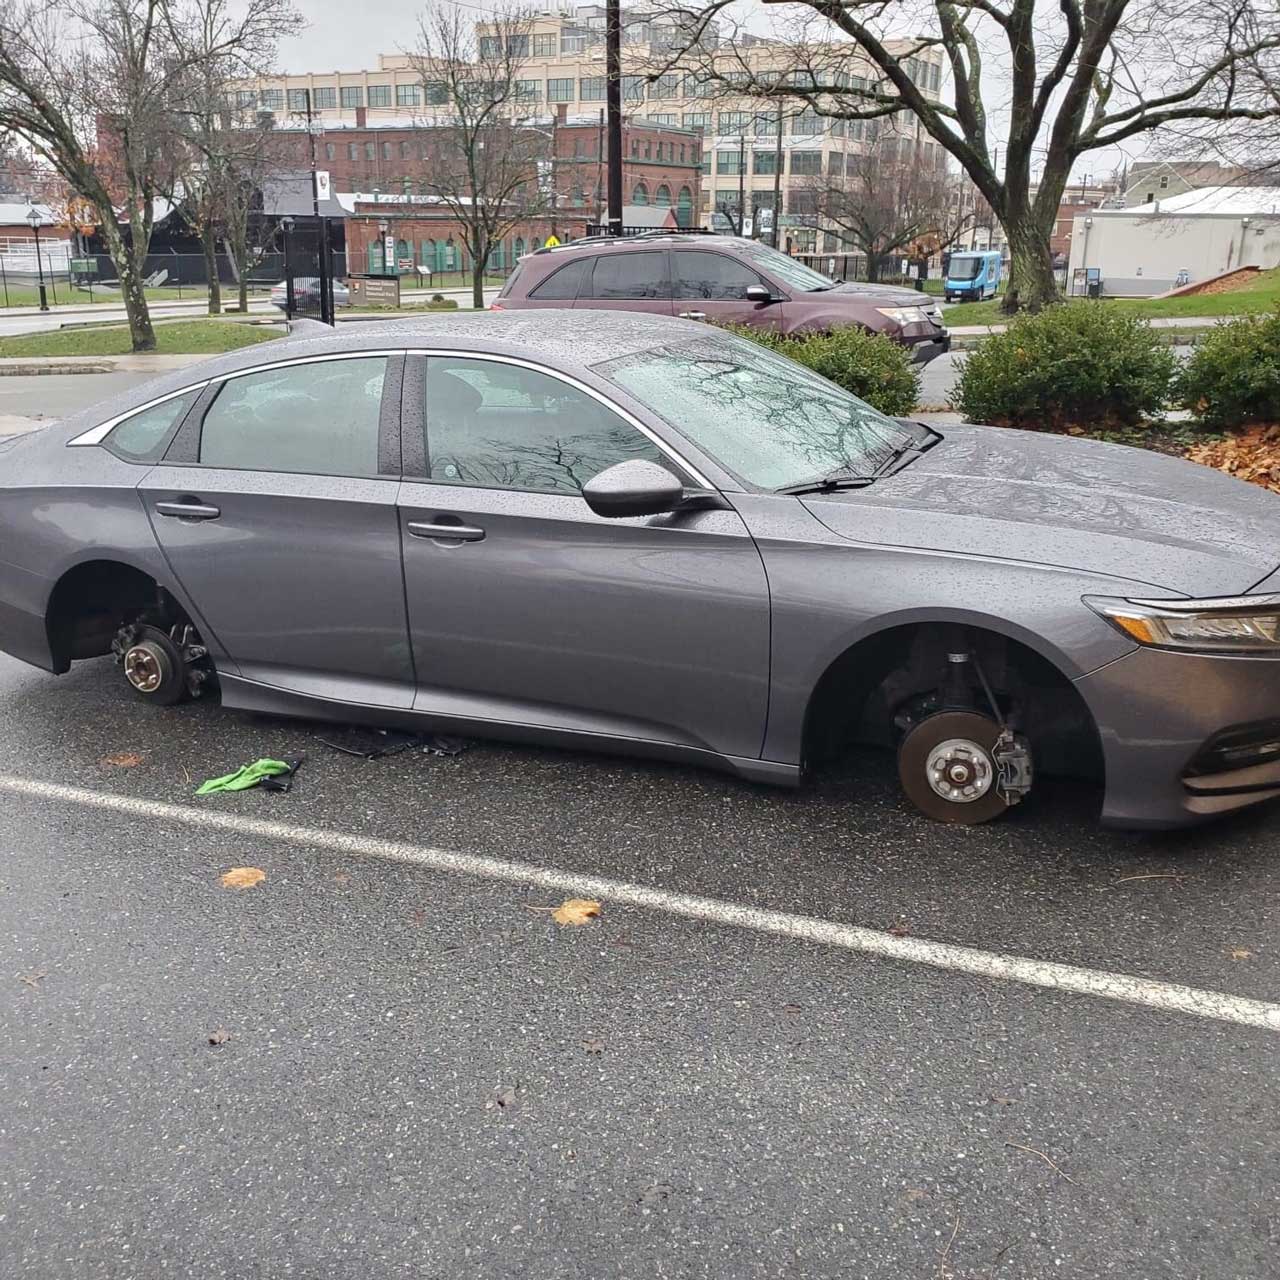 Tire Thieves West Orange New Jersey